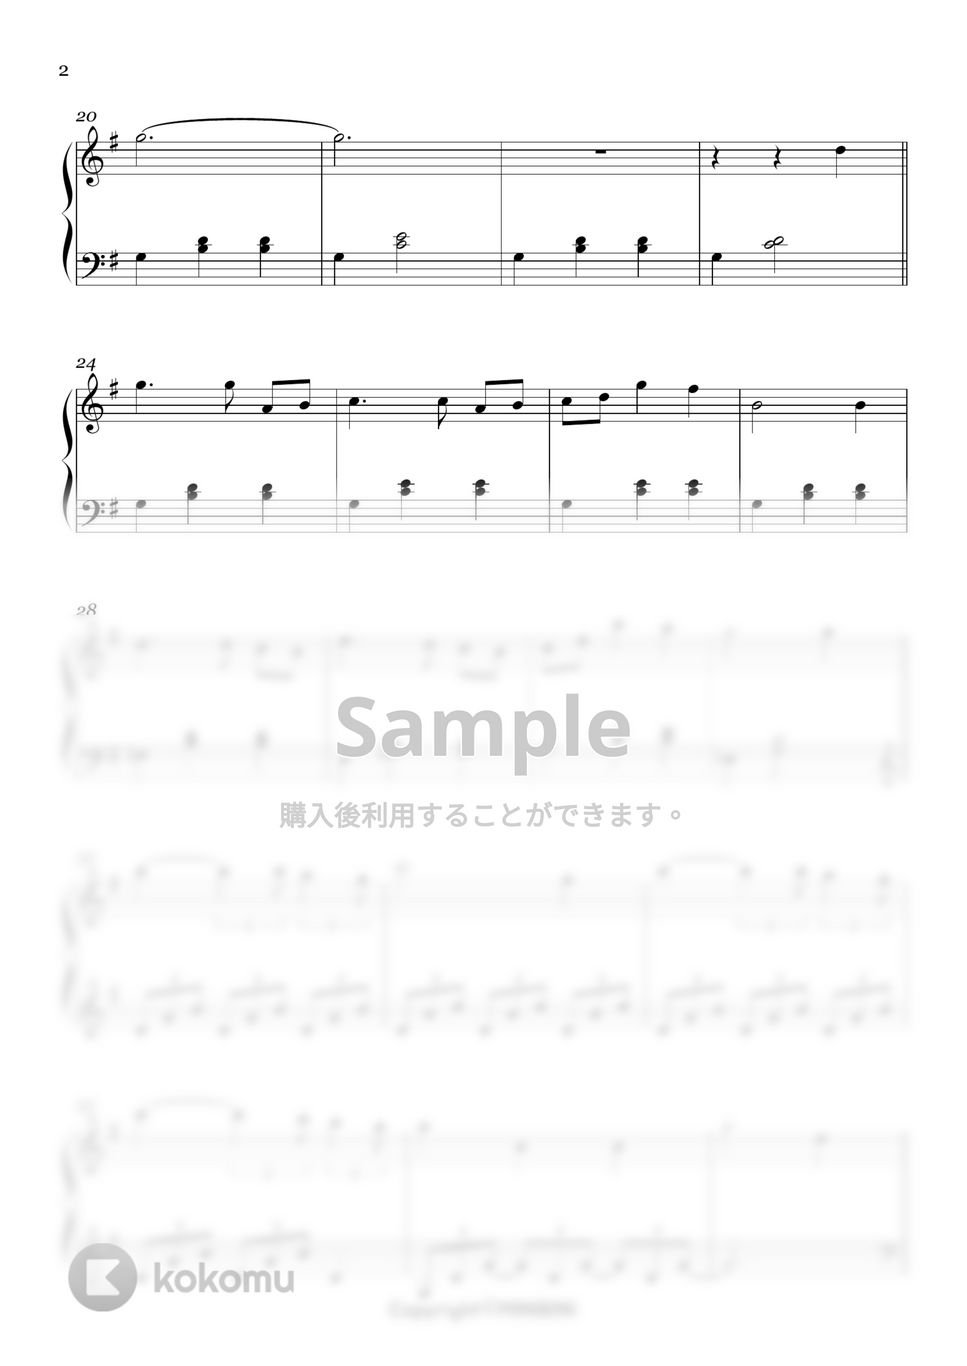 愛の不時着 OST - 兄のための歌(feat. ジョンヒョク) (Easy ver.) by MINIBINI